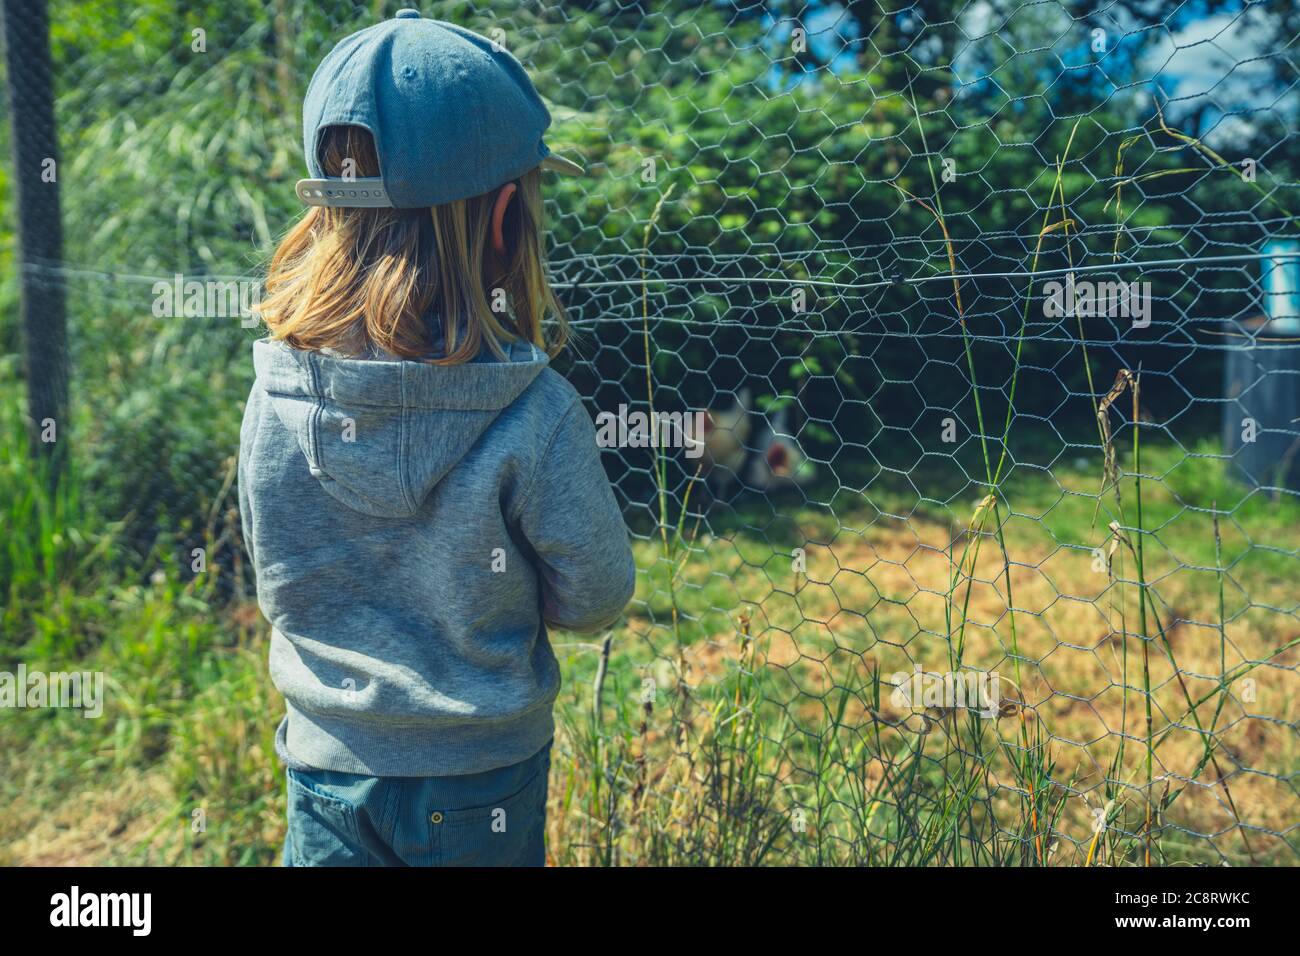 Un pré-chooler est debout près d'une clôture sur une ferme qui regarde les poulets Banque D'Images